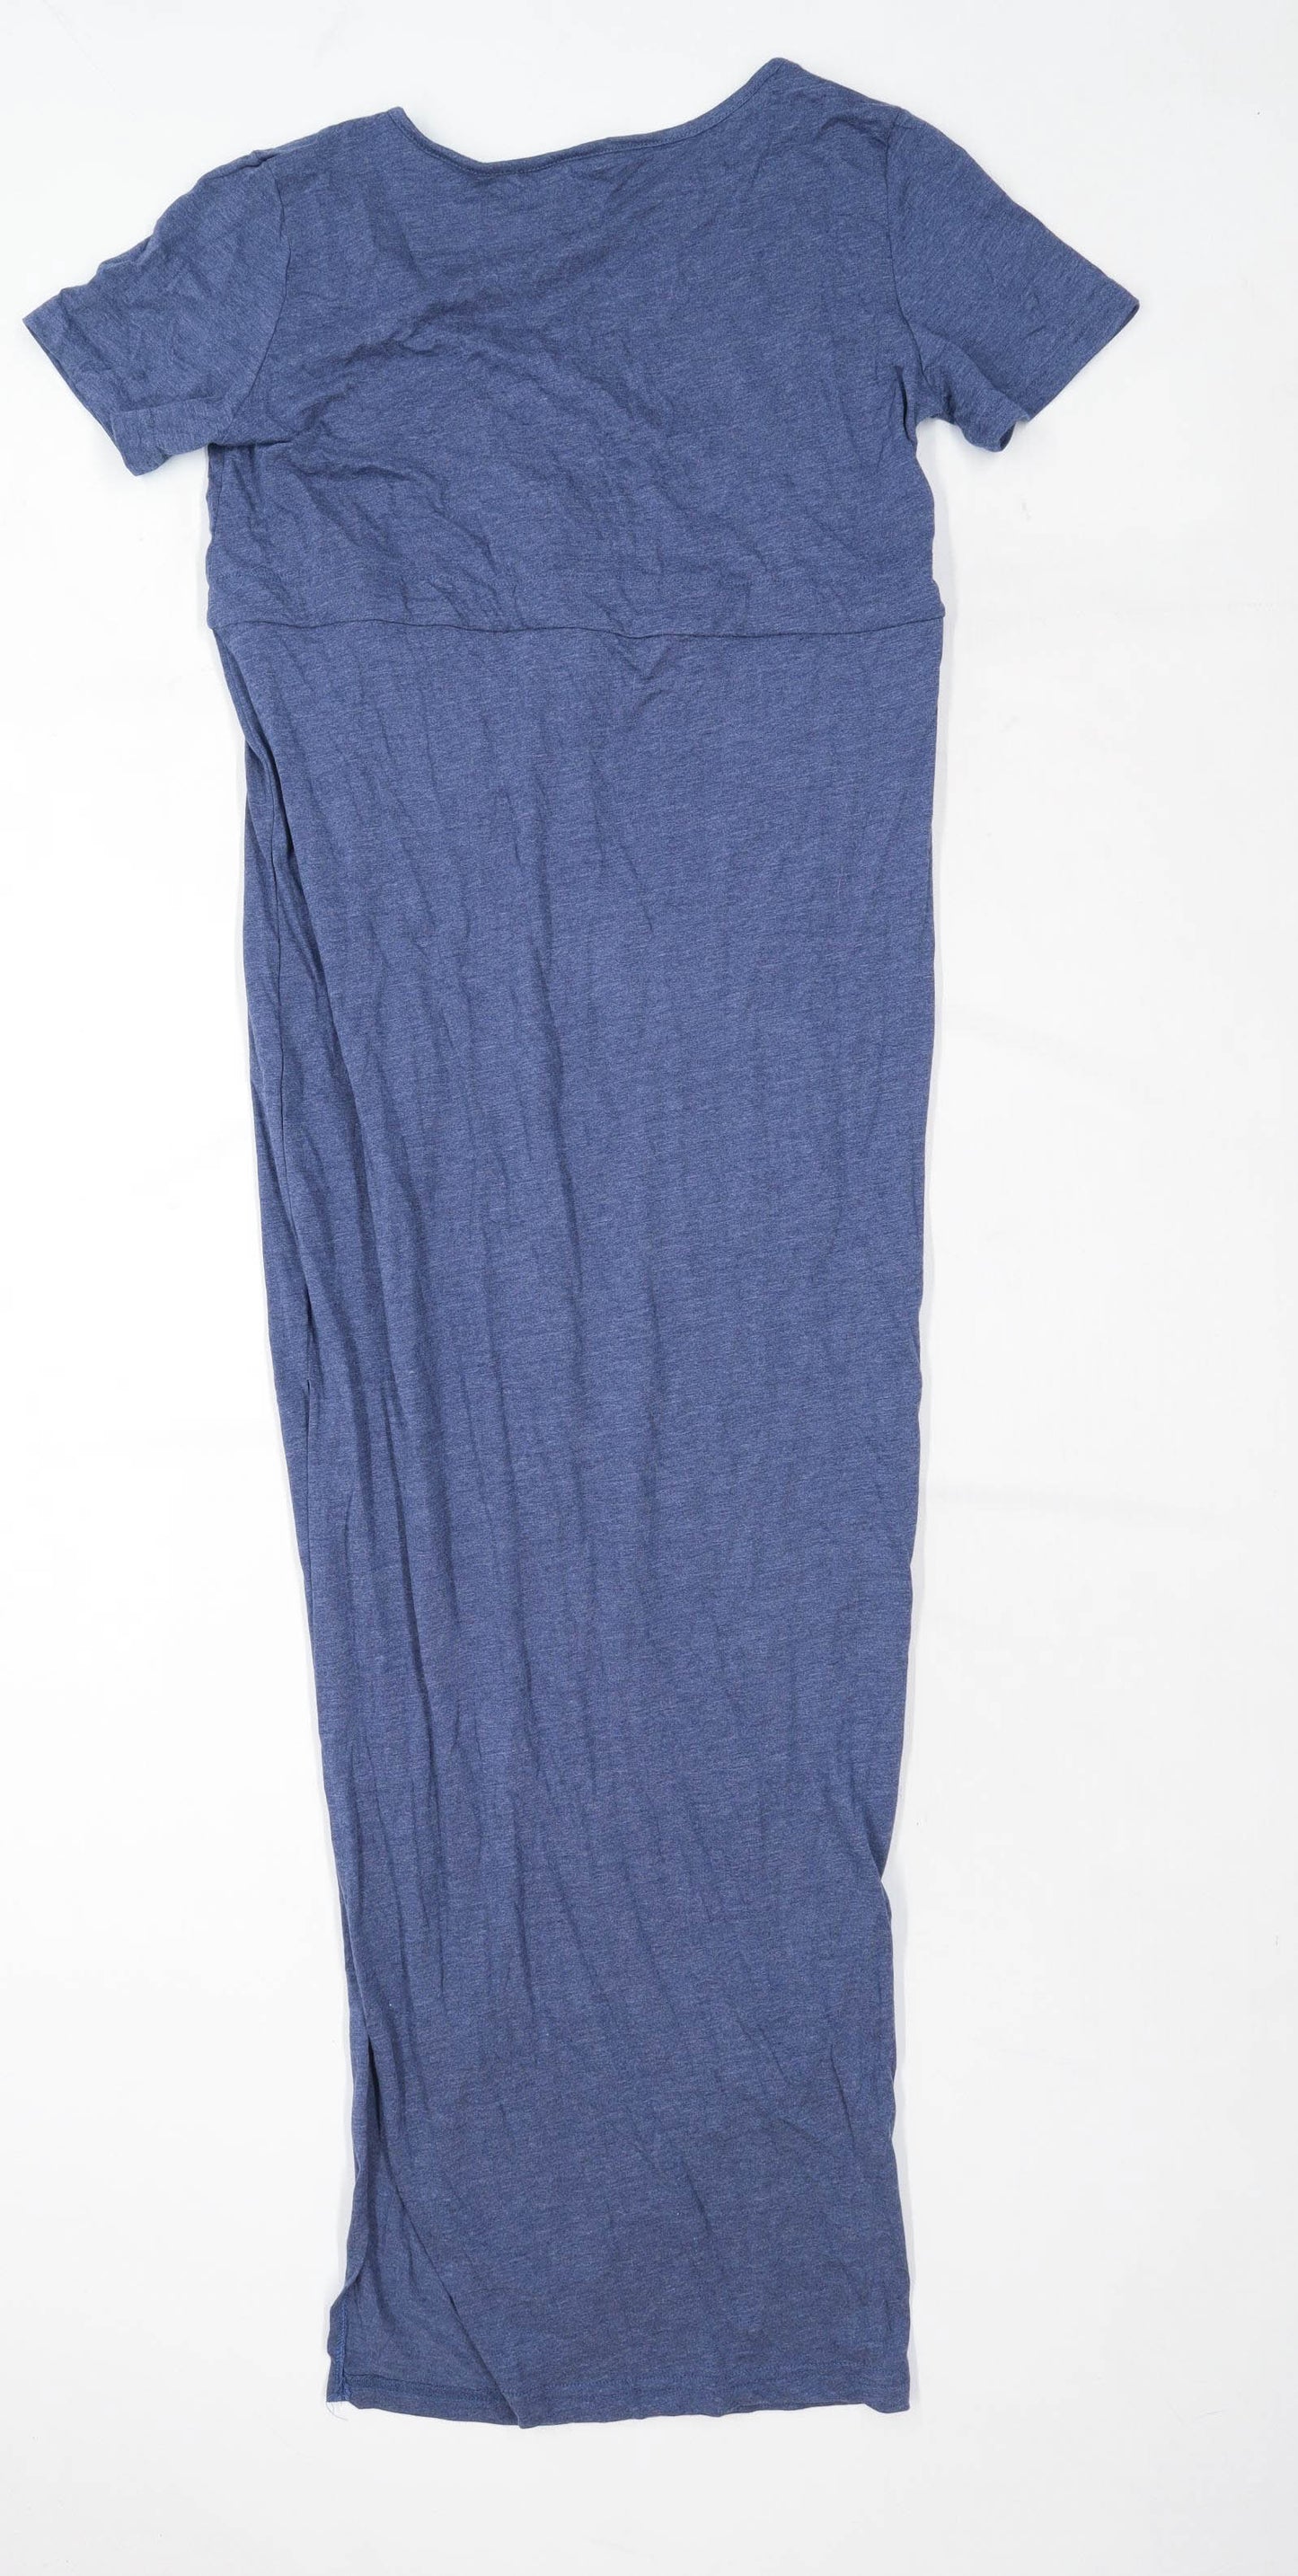 Preworn Womens Size M Cotton Blend Blue Maxi Dress (Regular)